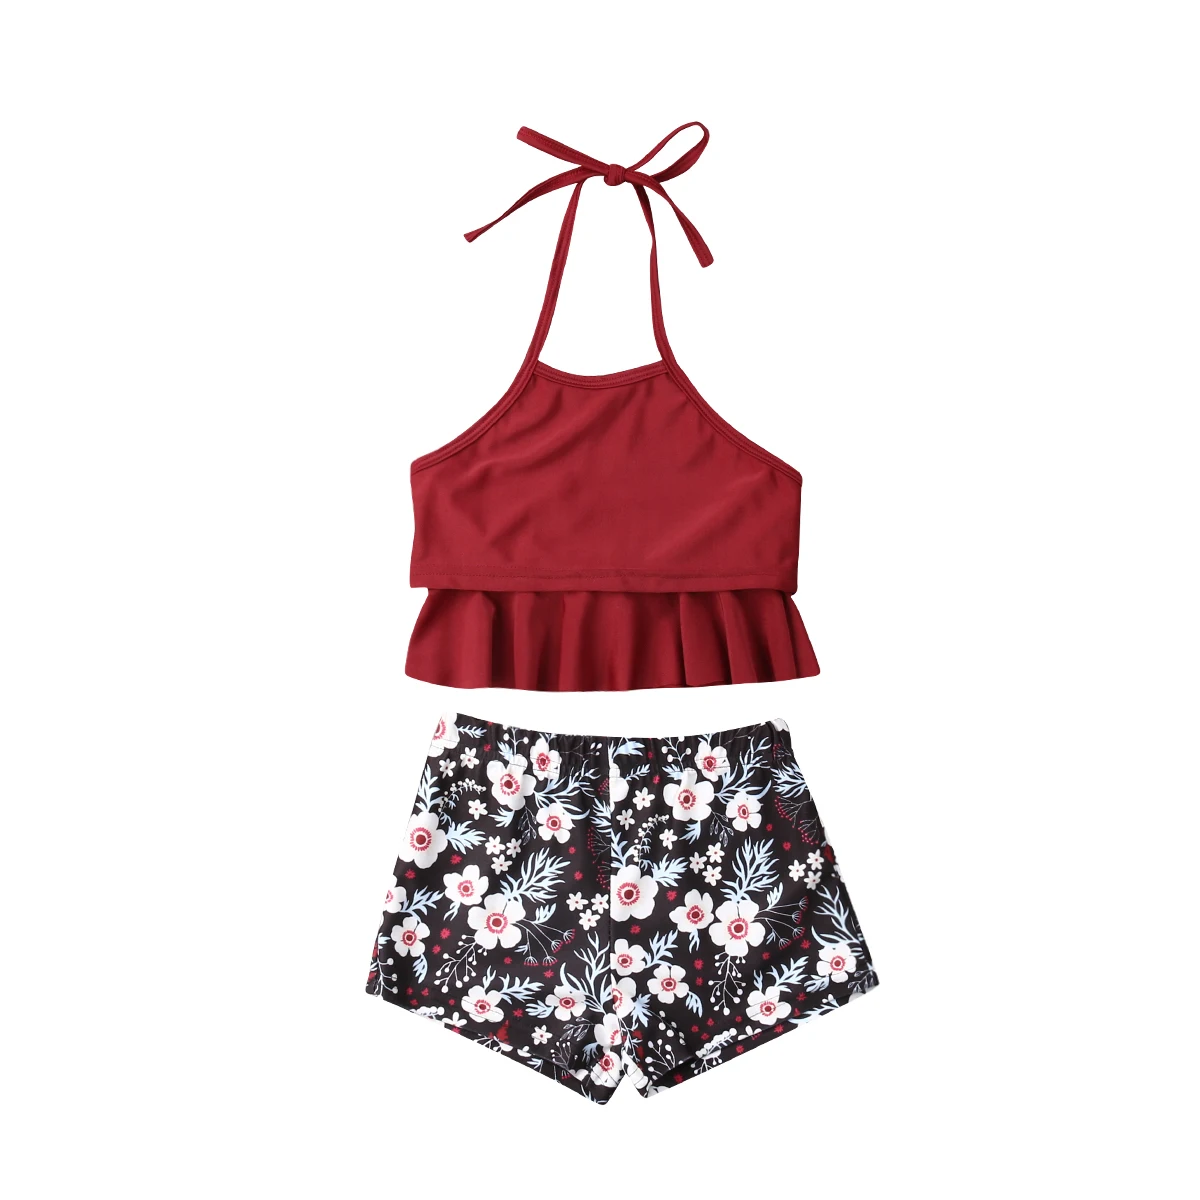 Новый летний семейный цветочный купальный костюм для мамы и дочки, женский купальник без рукавов с красным цветочным принтом